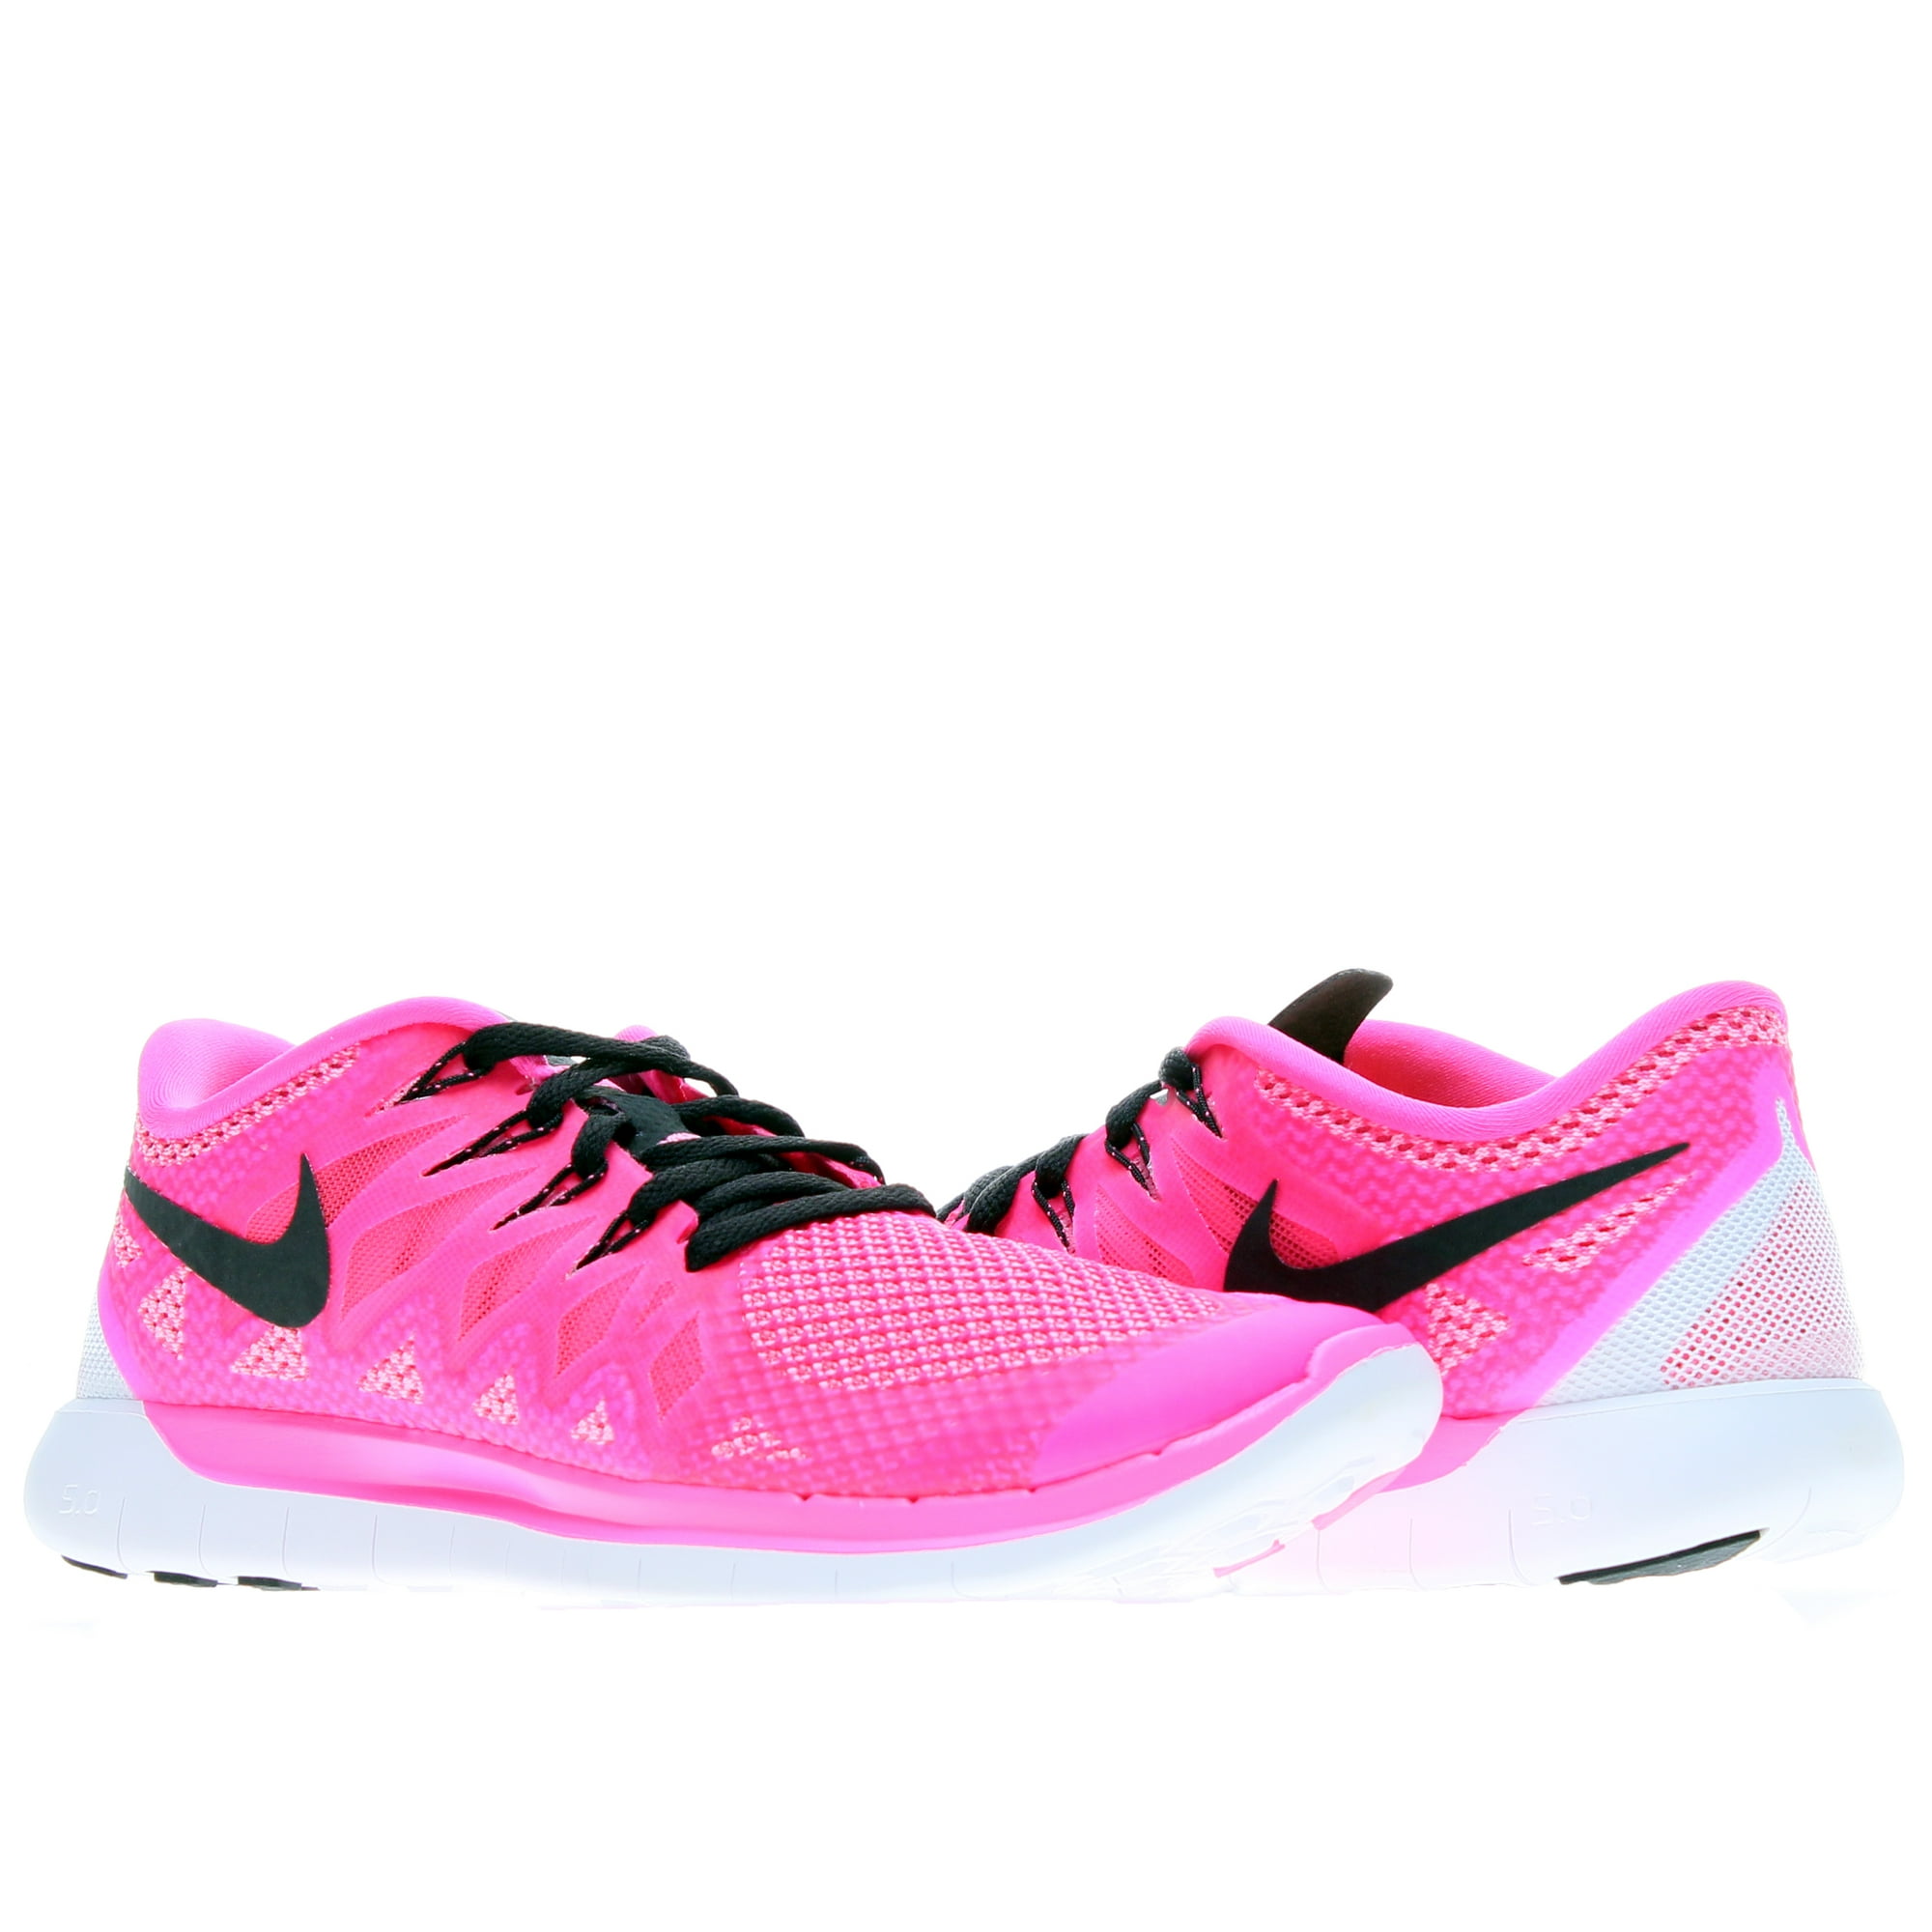 Nike 5.0 Women's Running Shoes 8 Walmart.com